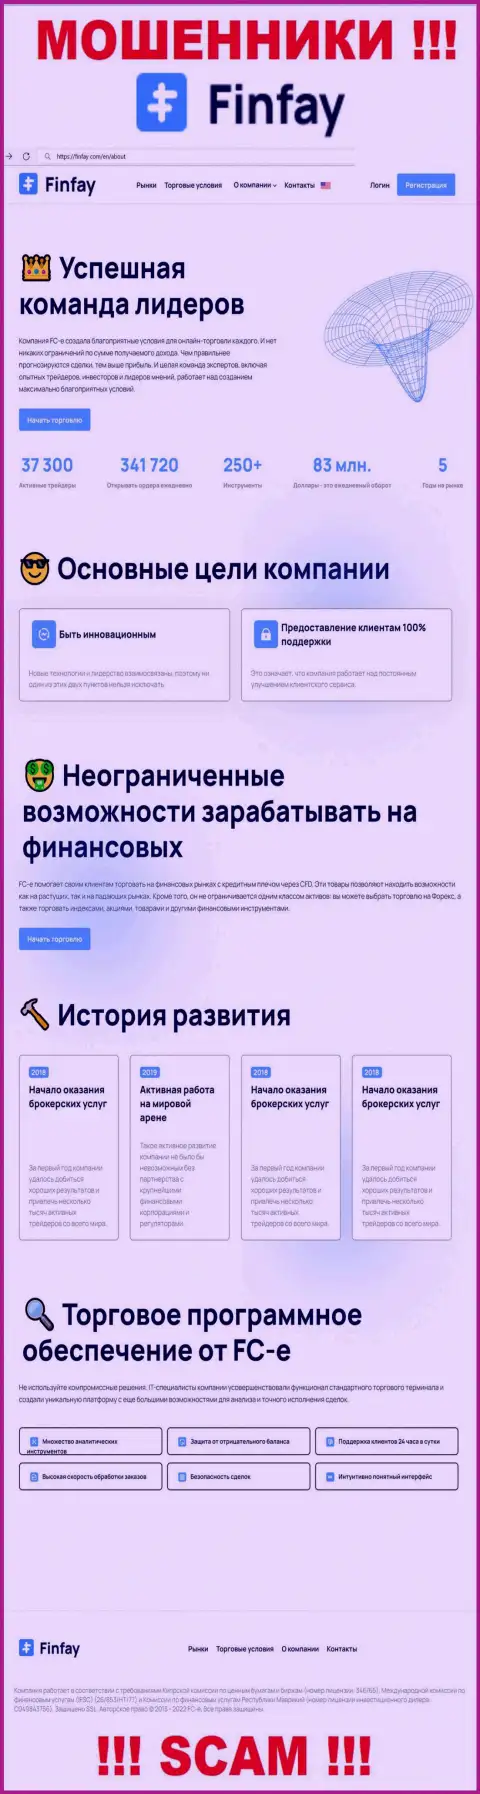 Главная страница официального интернет-ресурса мошенников ФинФай